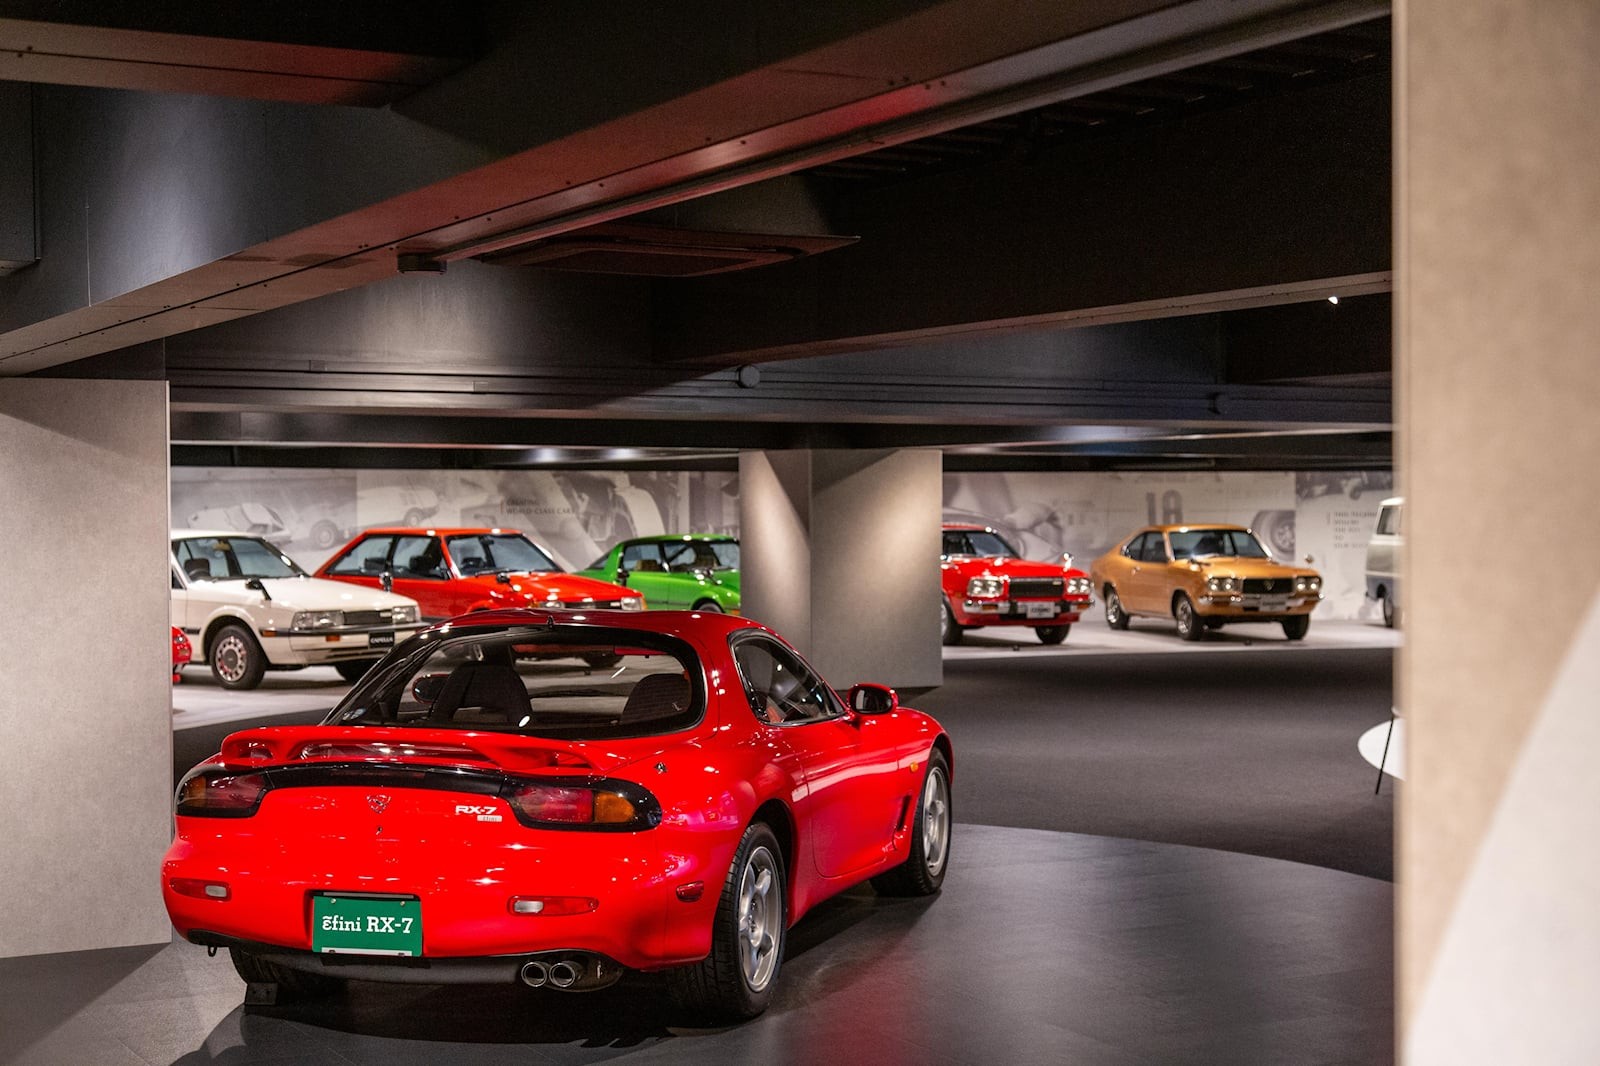 Khám phá bảo tàng của Mazda tại Nhật Bản ảnh 8